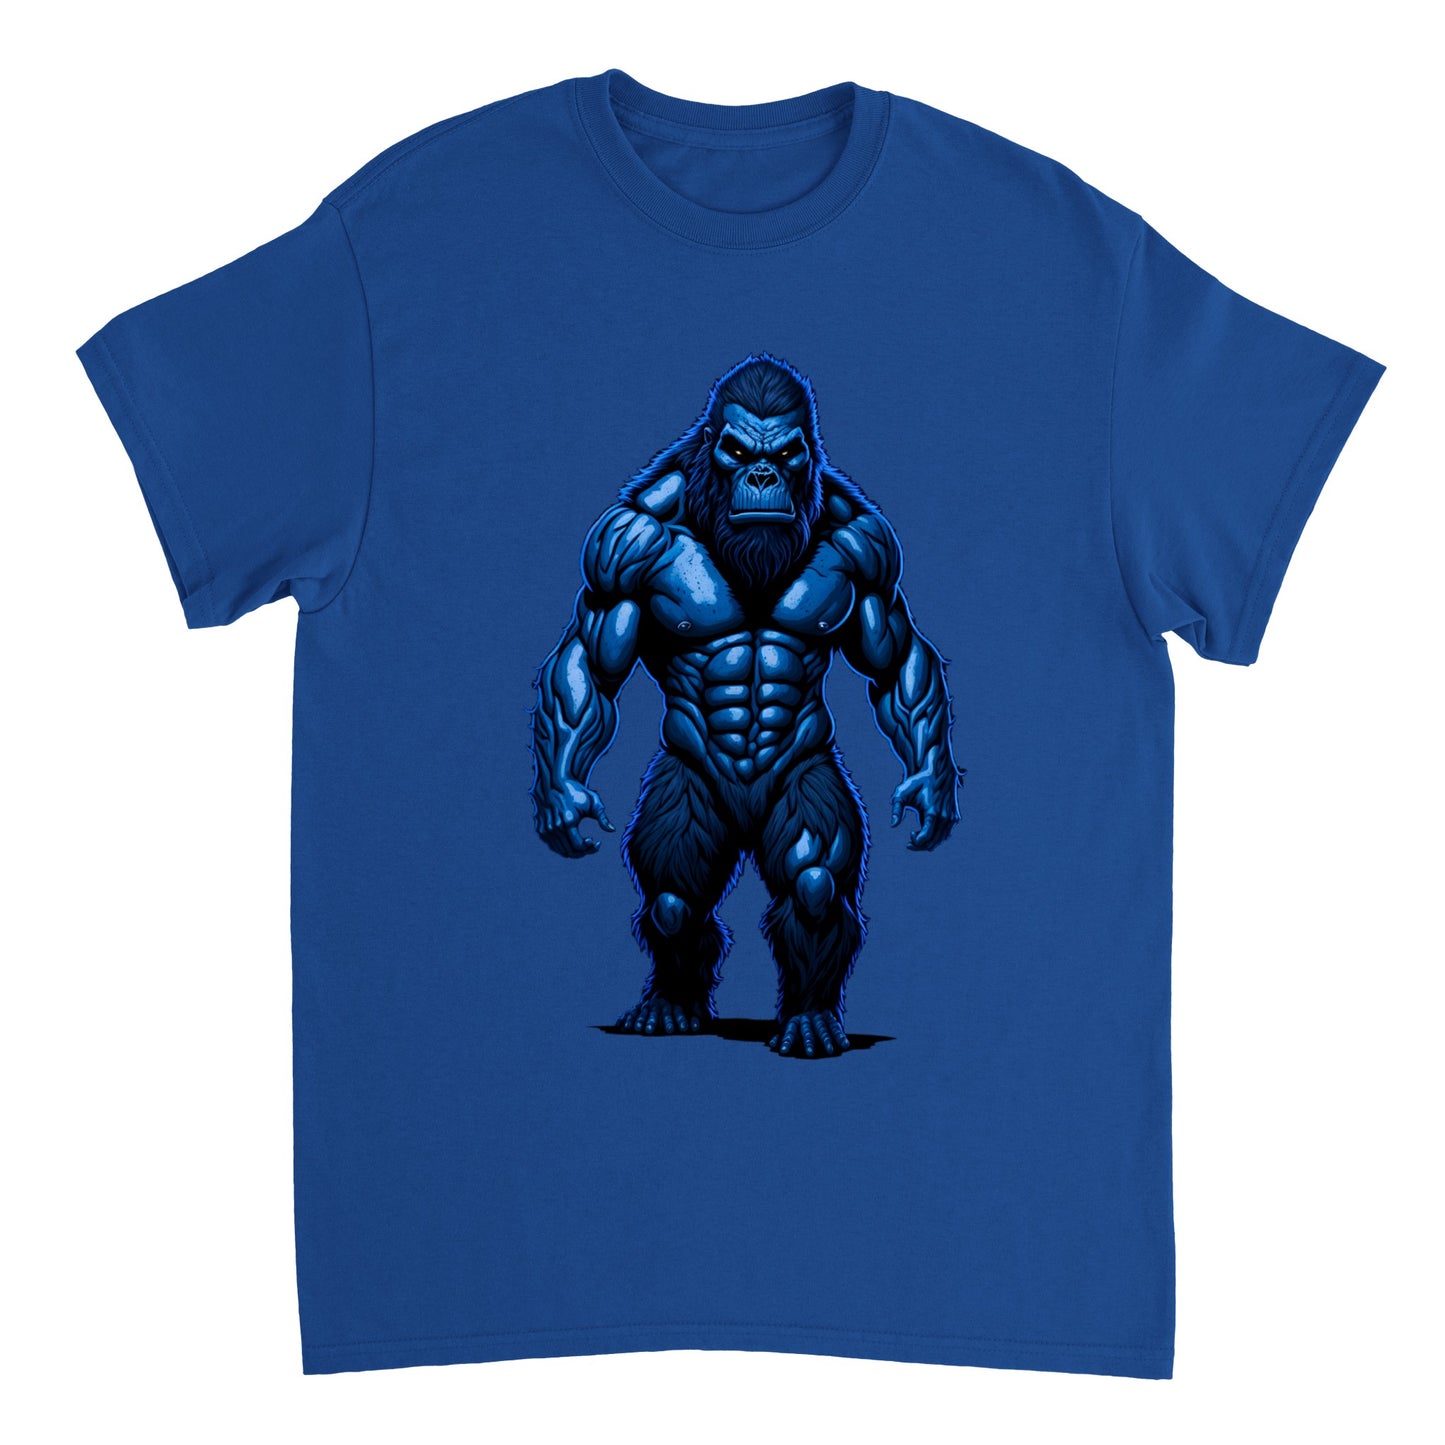 3D Bigfoot Art - Heavyweight Unisex Crewneck T-shirt 29